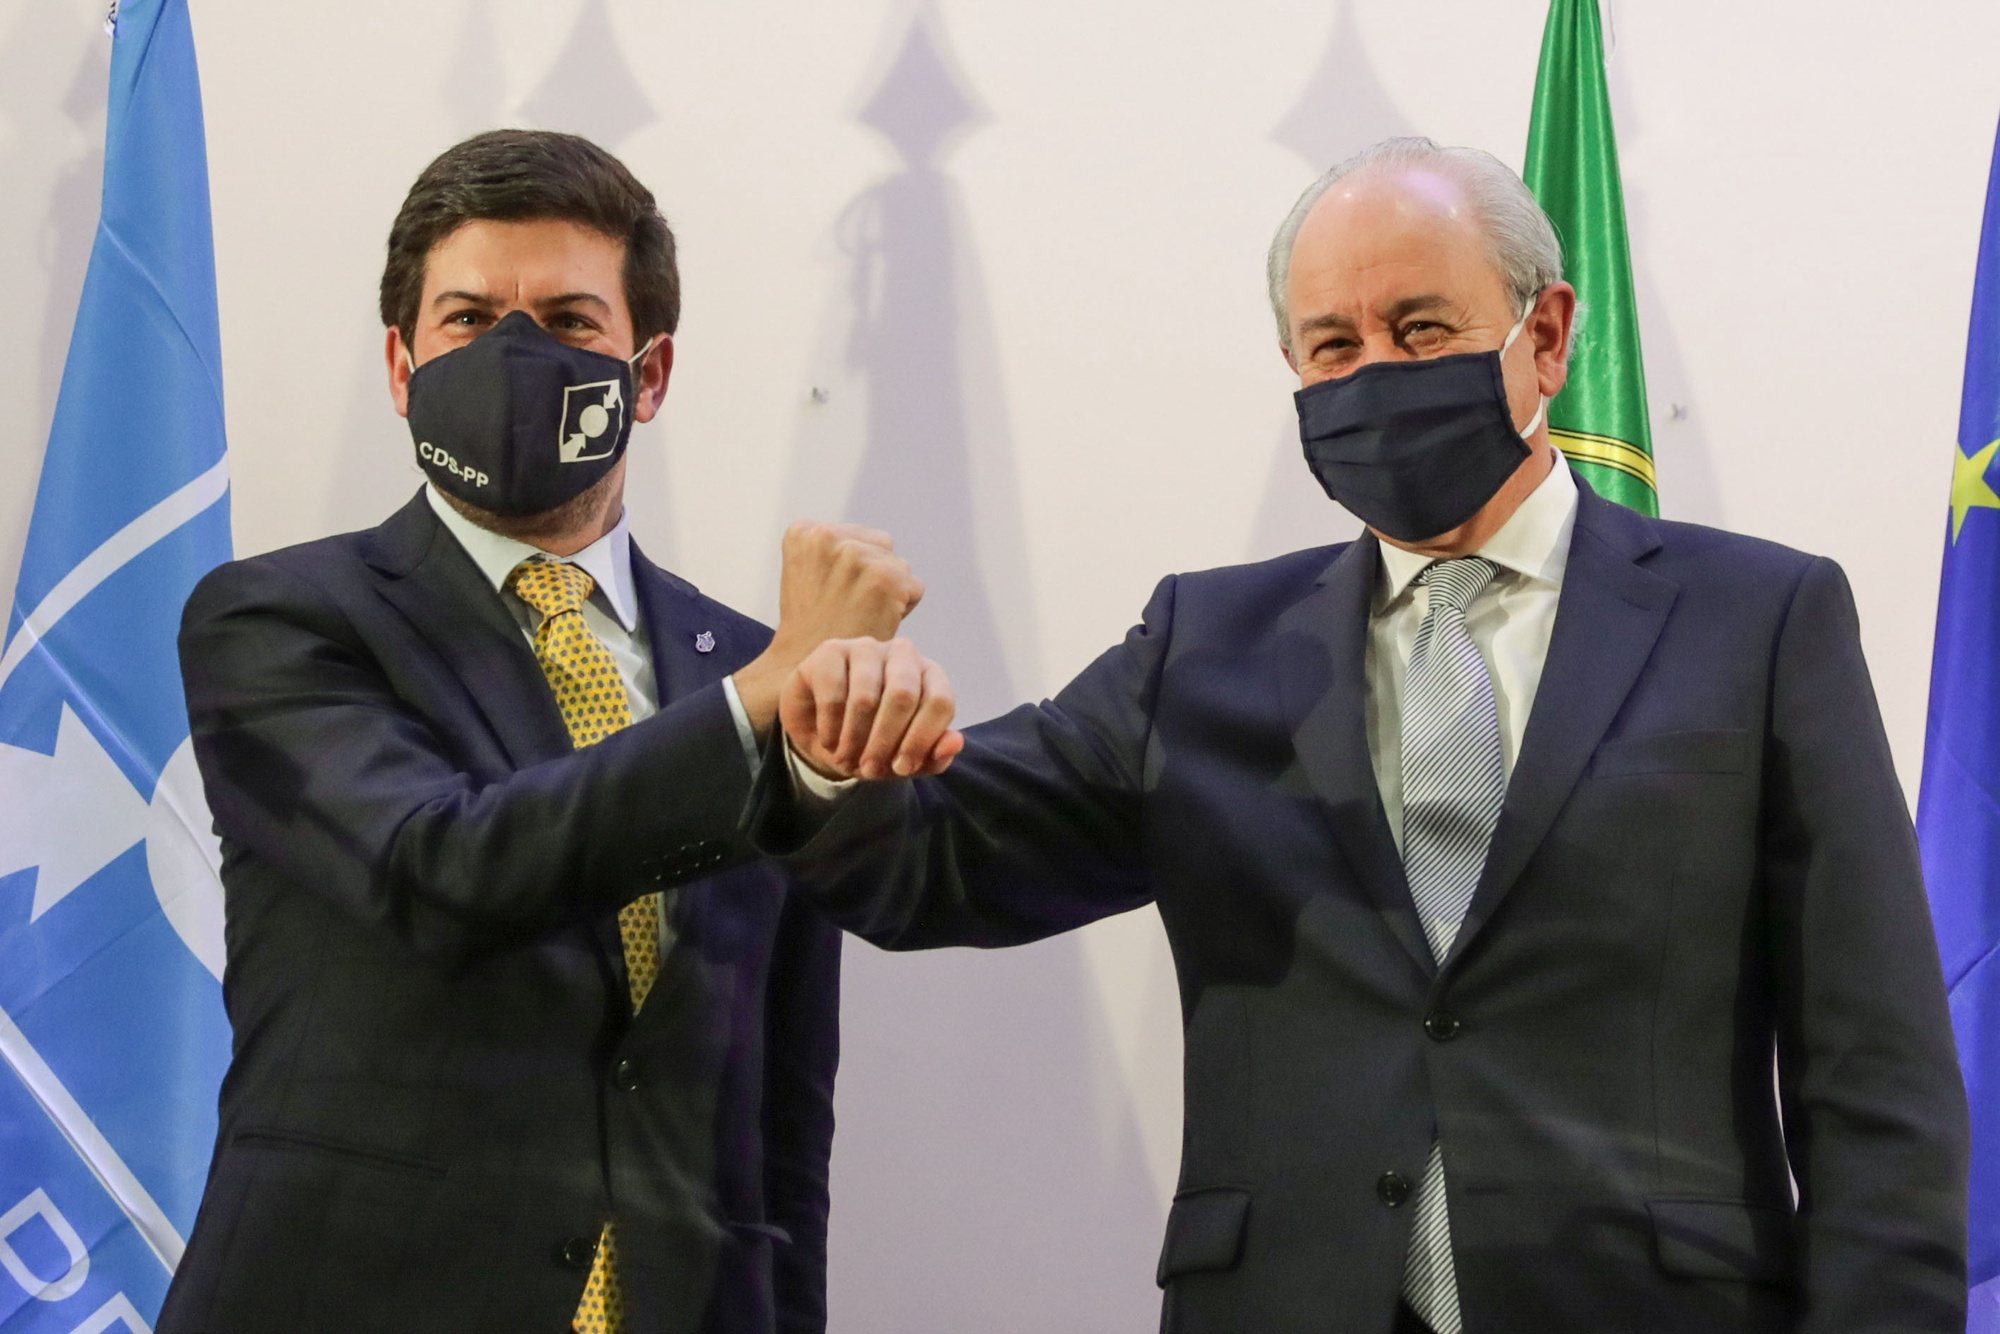 O Presidente do Partido Social-Democrata (PSD) Rui Rio (R) e o Presidente do CDS/PP, Francisco Rodrigues dos Santos (E), cumprimentam-se após a assinatura do acordo quadro para as eleições autárquicas, num hotel de Lisboa, 16 de novembro de 2020. TIAGO PETINGA/LUSA